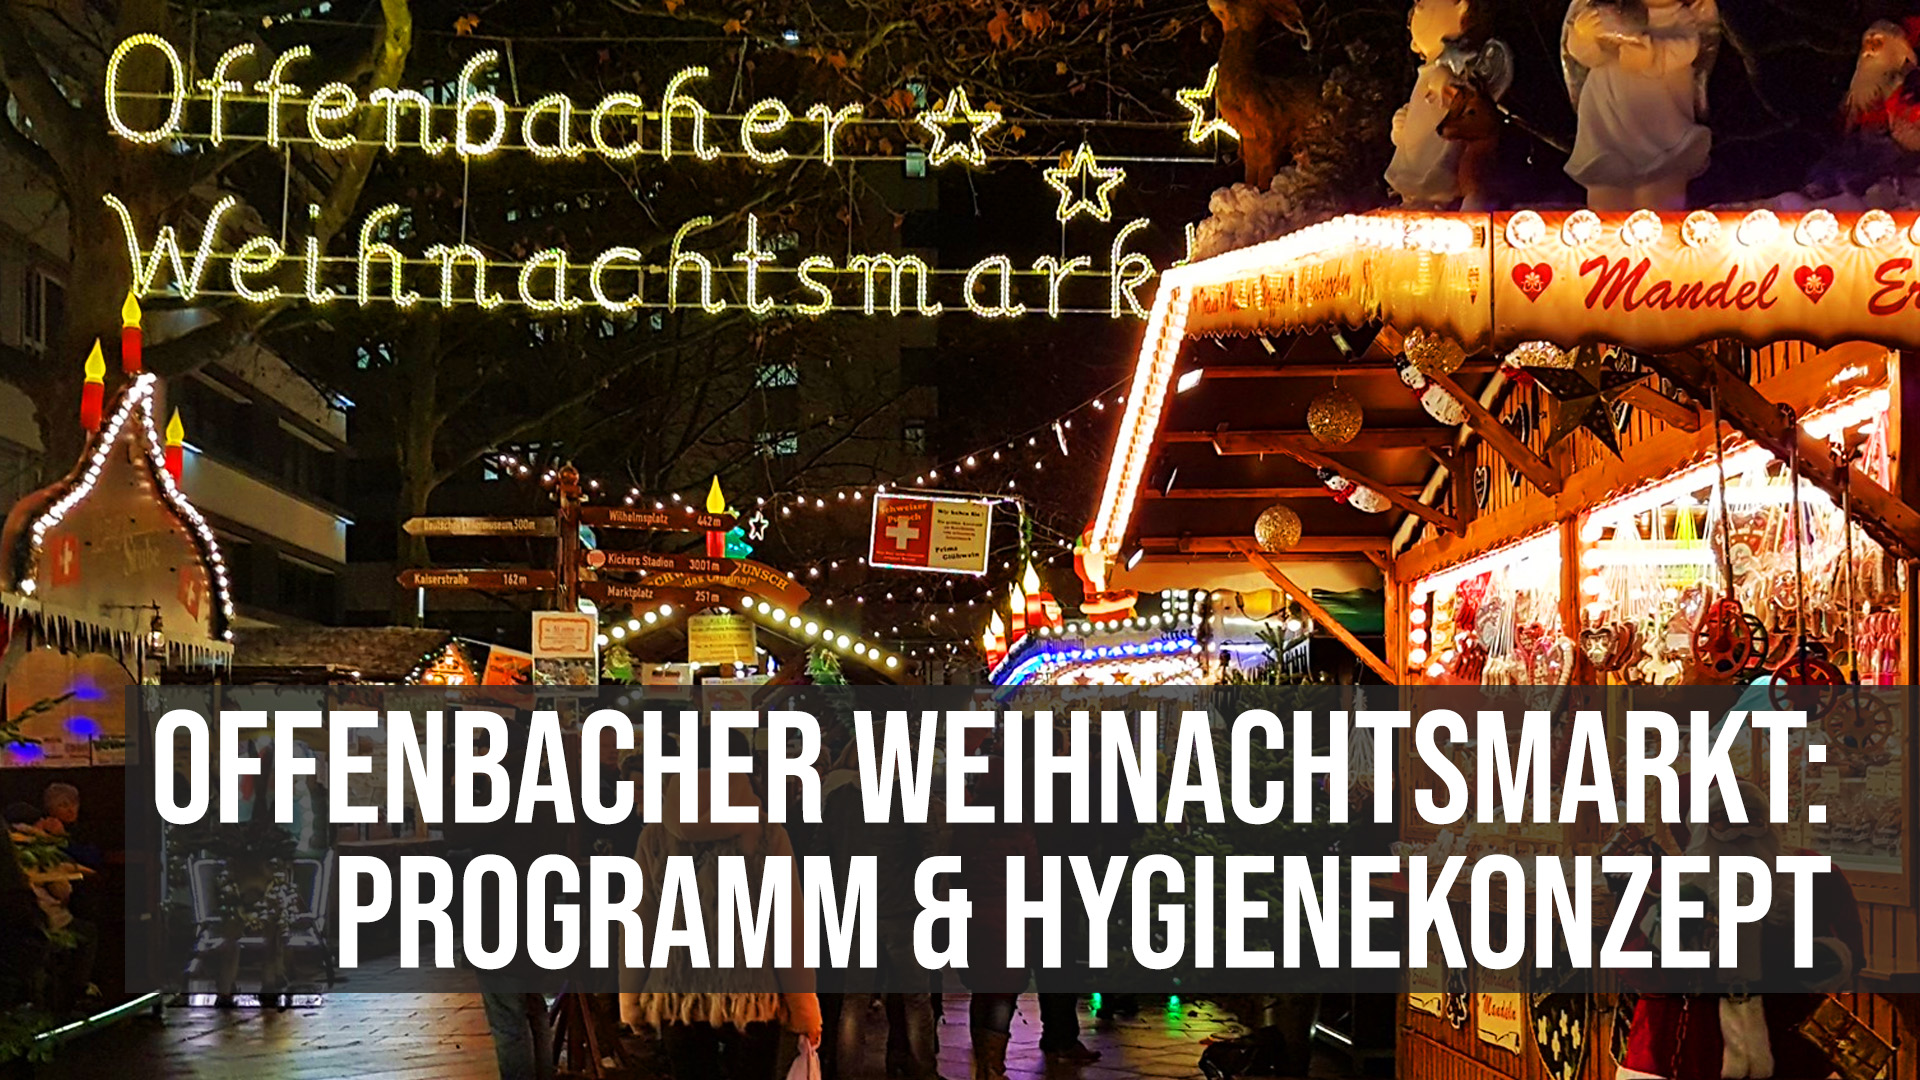 Weihnachtsmarkt Offenbach 2021 Programm und Hygienekonzept 2G 3G